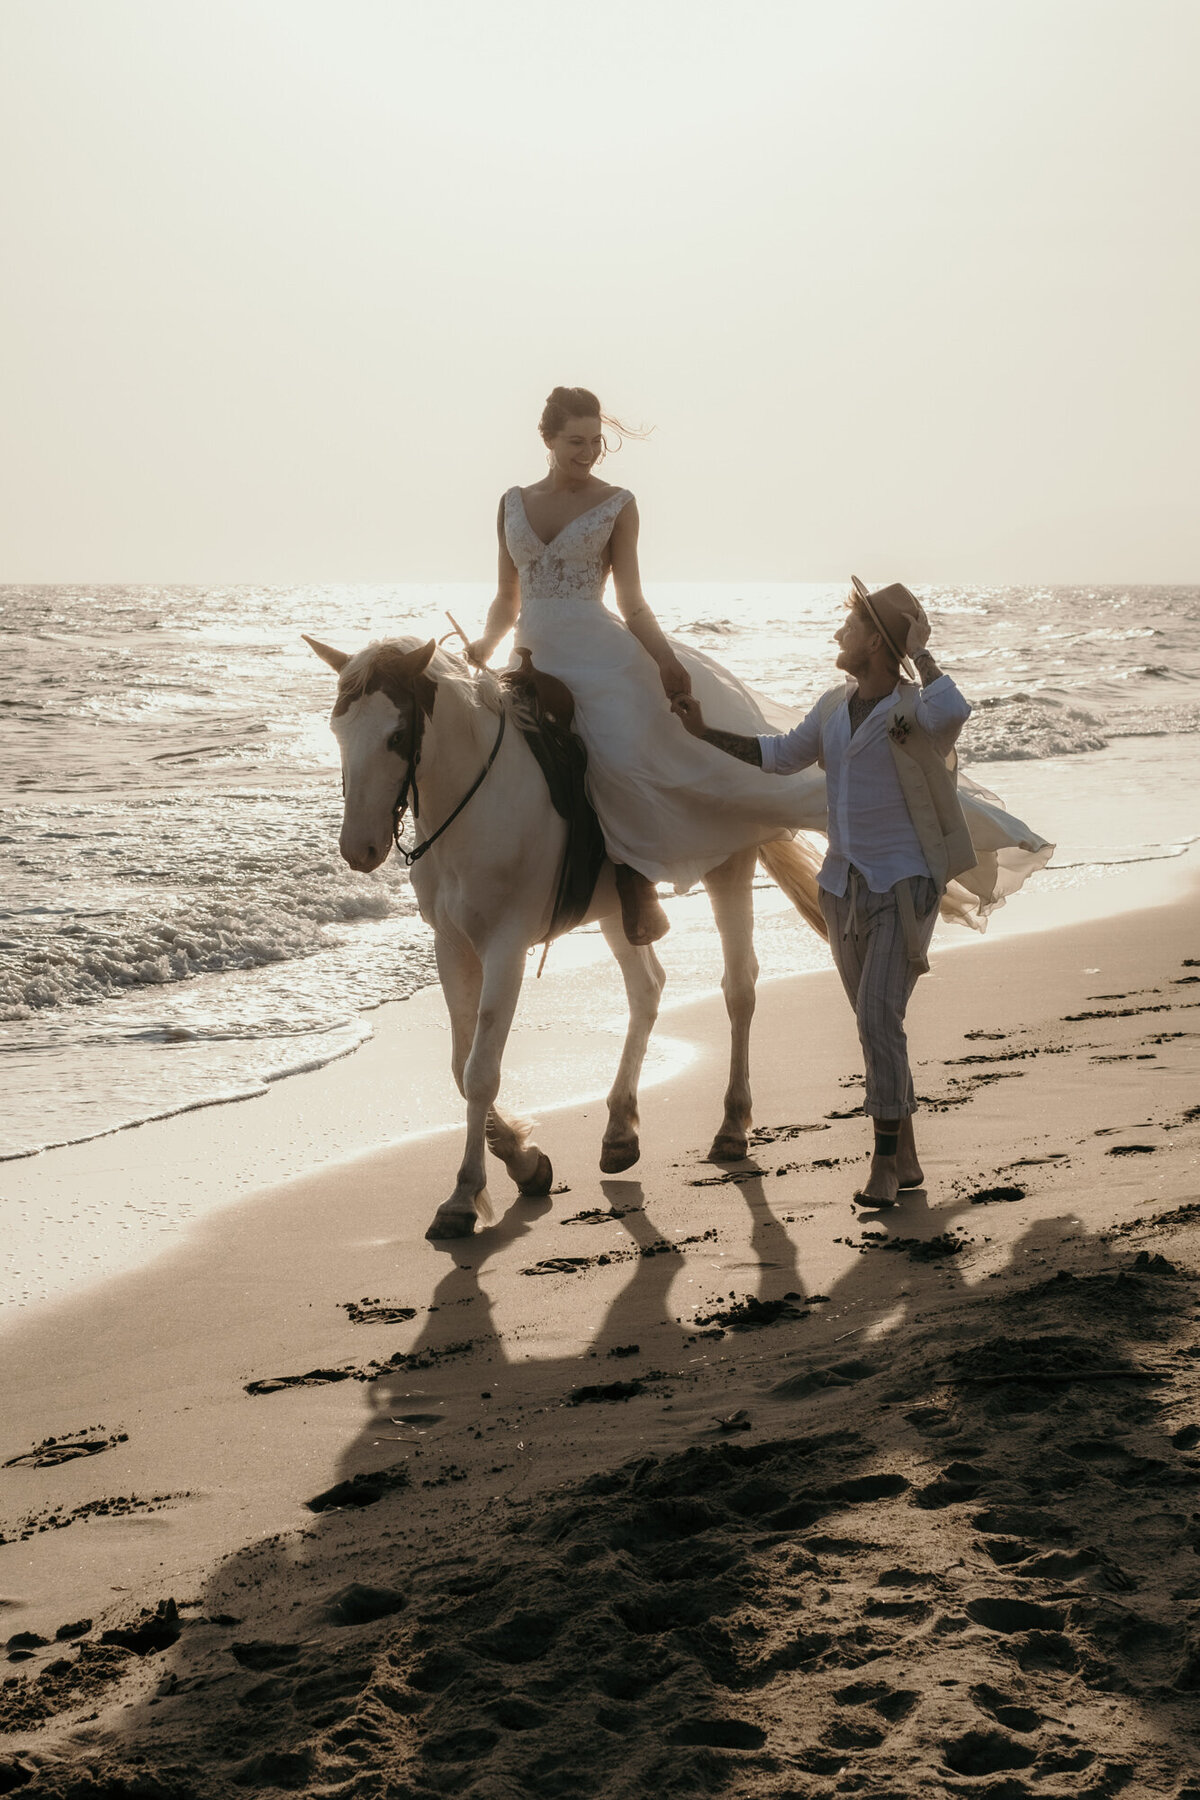 Die Braut reitet auf dem Pferd am Meeresufer. Ihr Bräutigam läuft sie anblickend neben ihr.